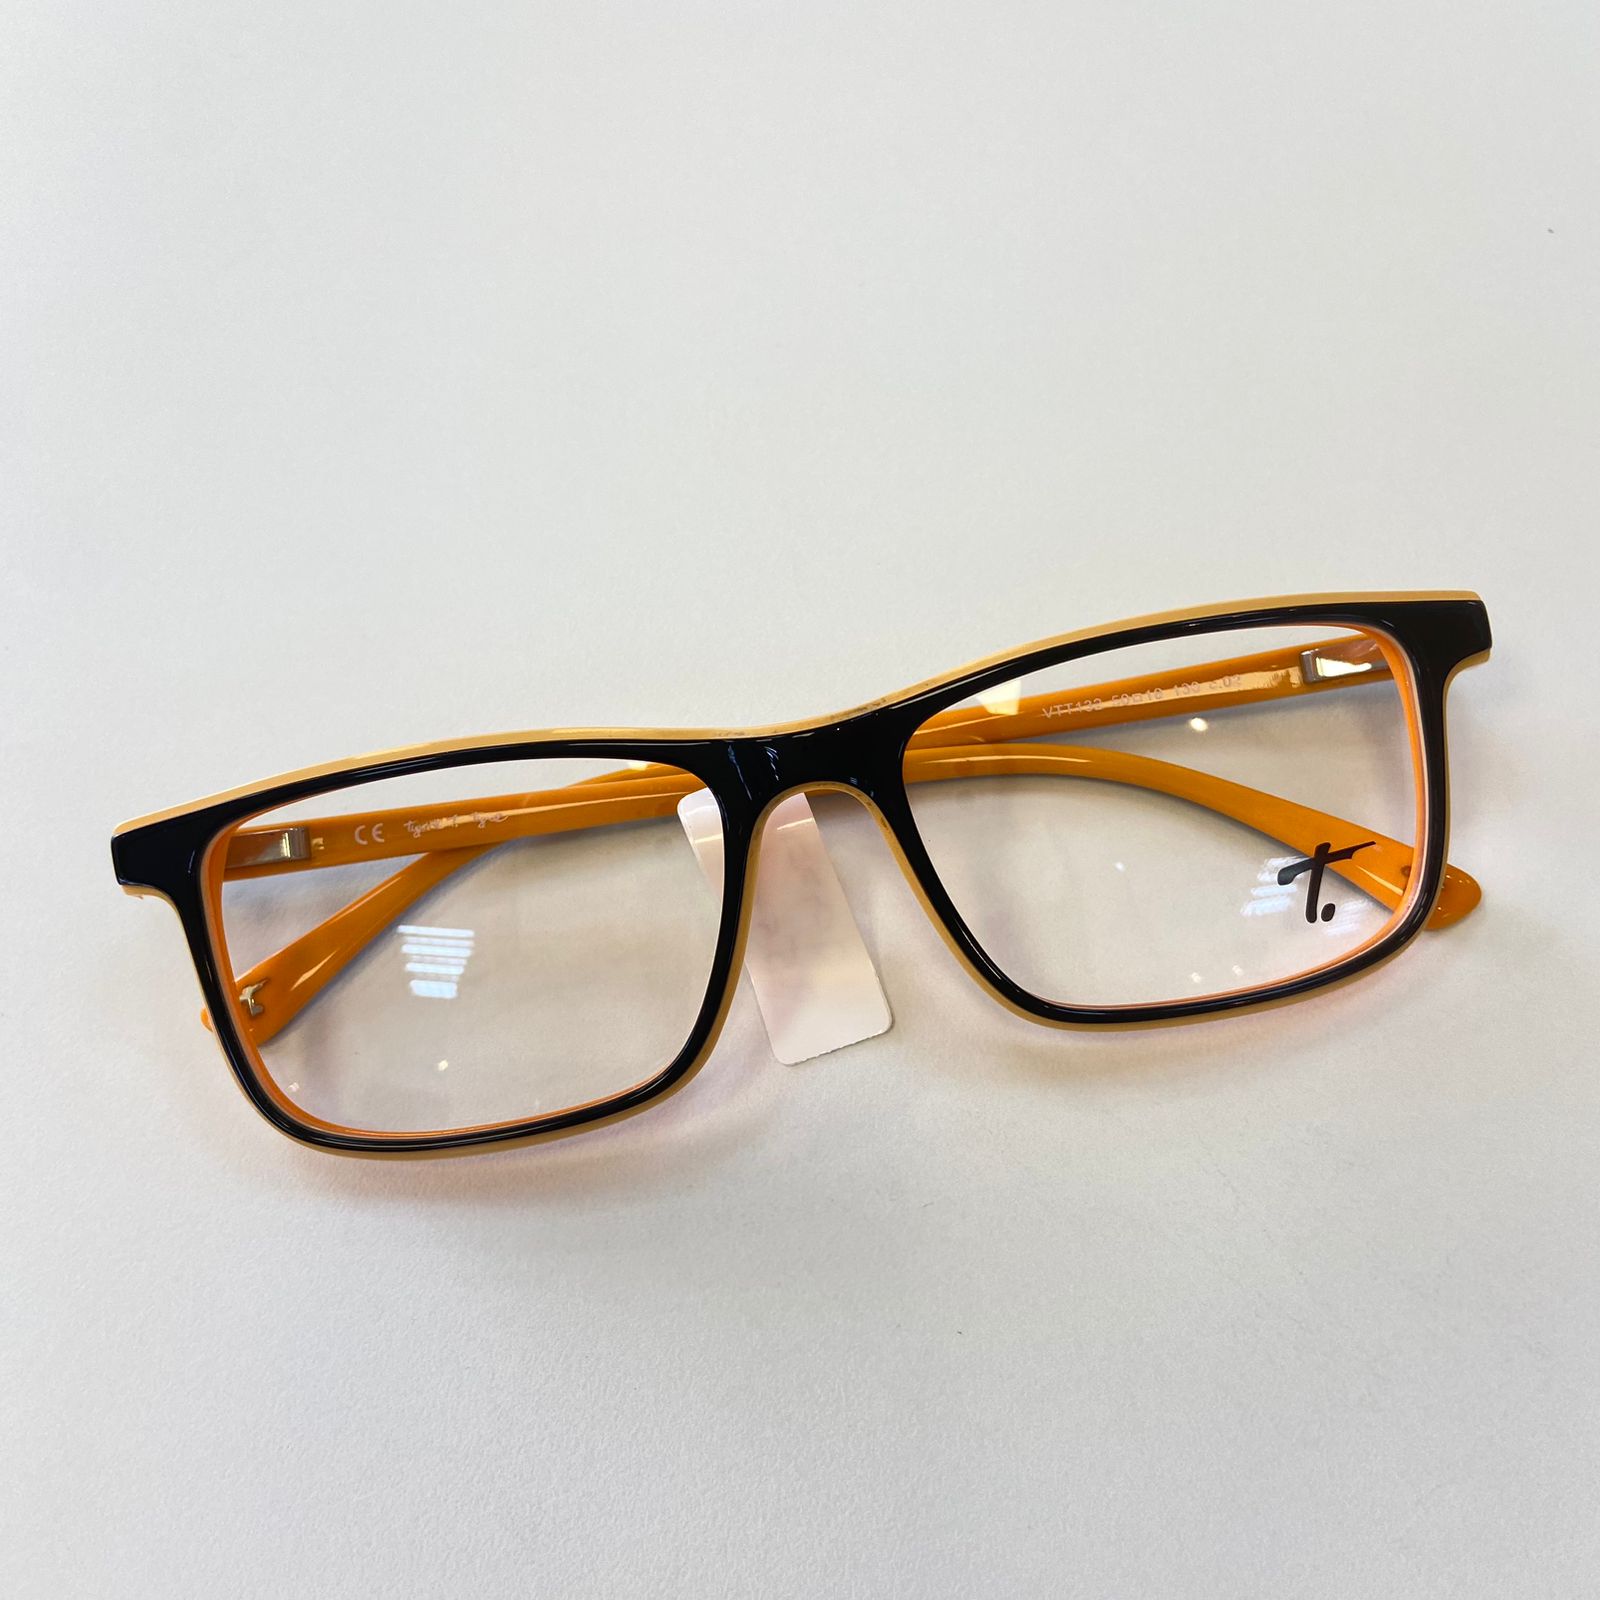 Óculos para Sinuca em Óticas Bifocal - Capricho e dedicação desde 1978